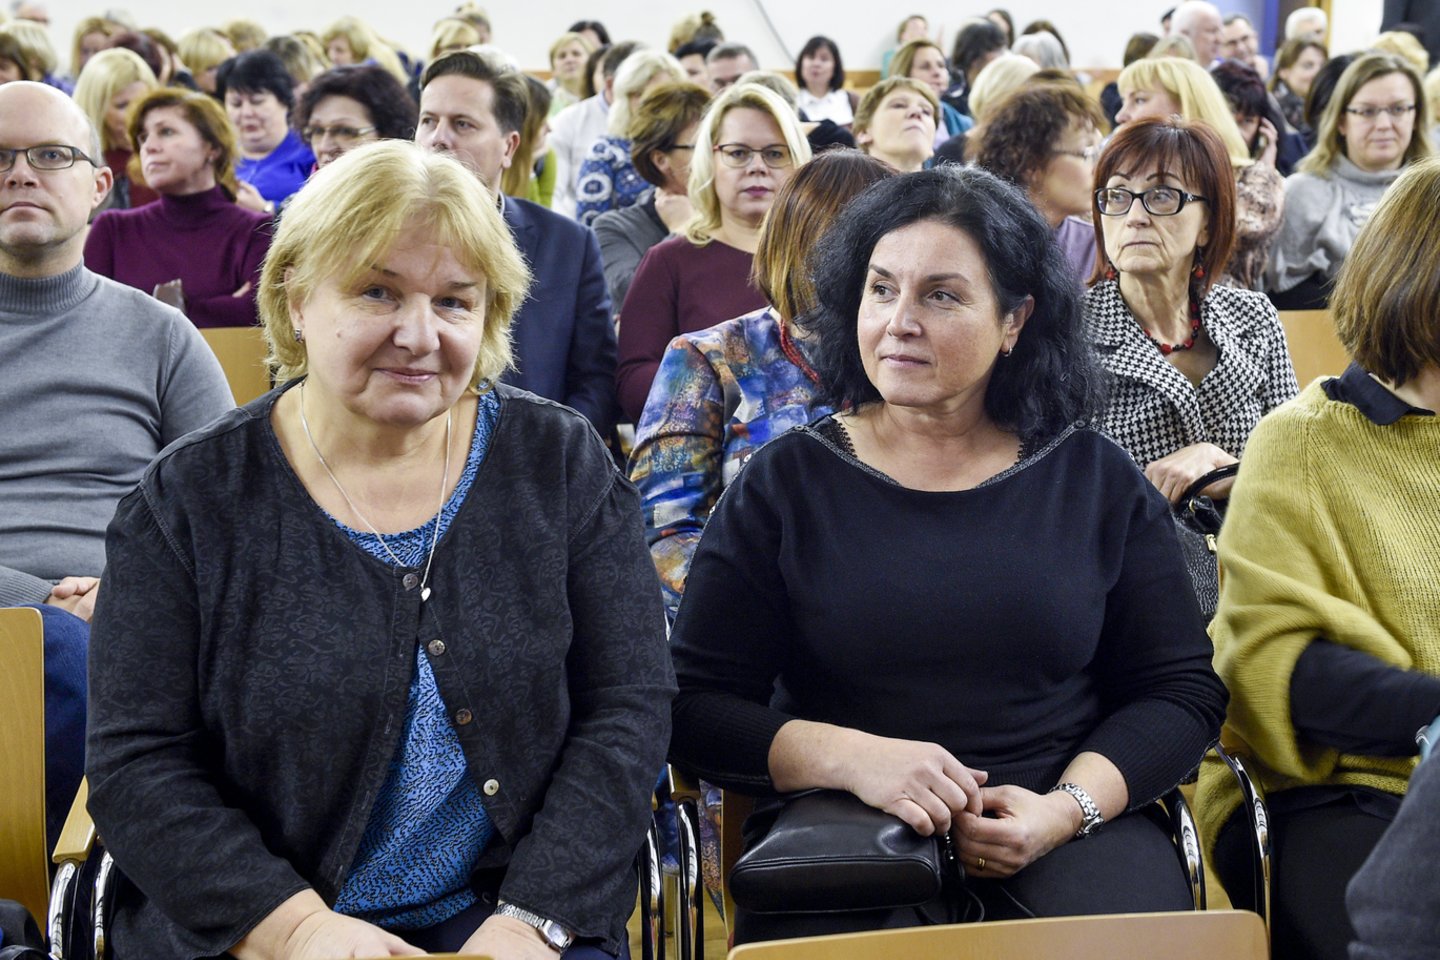 Ketvirtadienį mokytojai išreiškė nepasitenkinimą ministru A.Monkevičiumi.<br> V.Ščiavinsko nuotr.